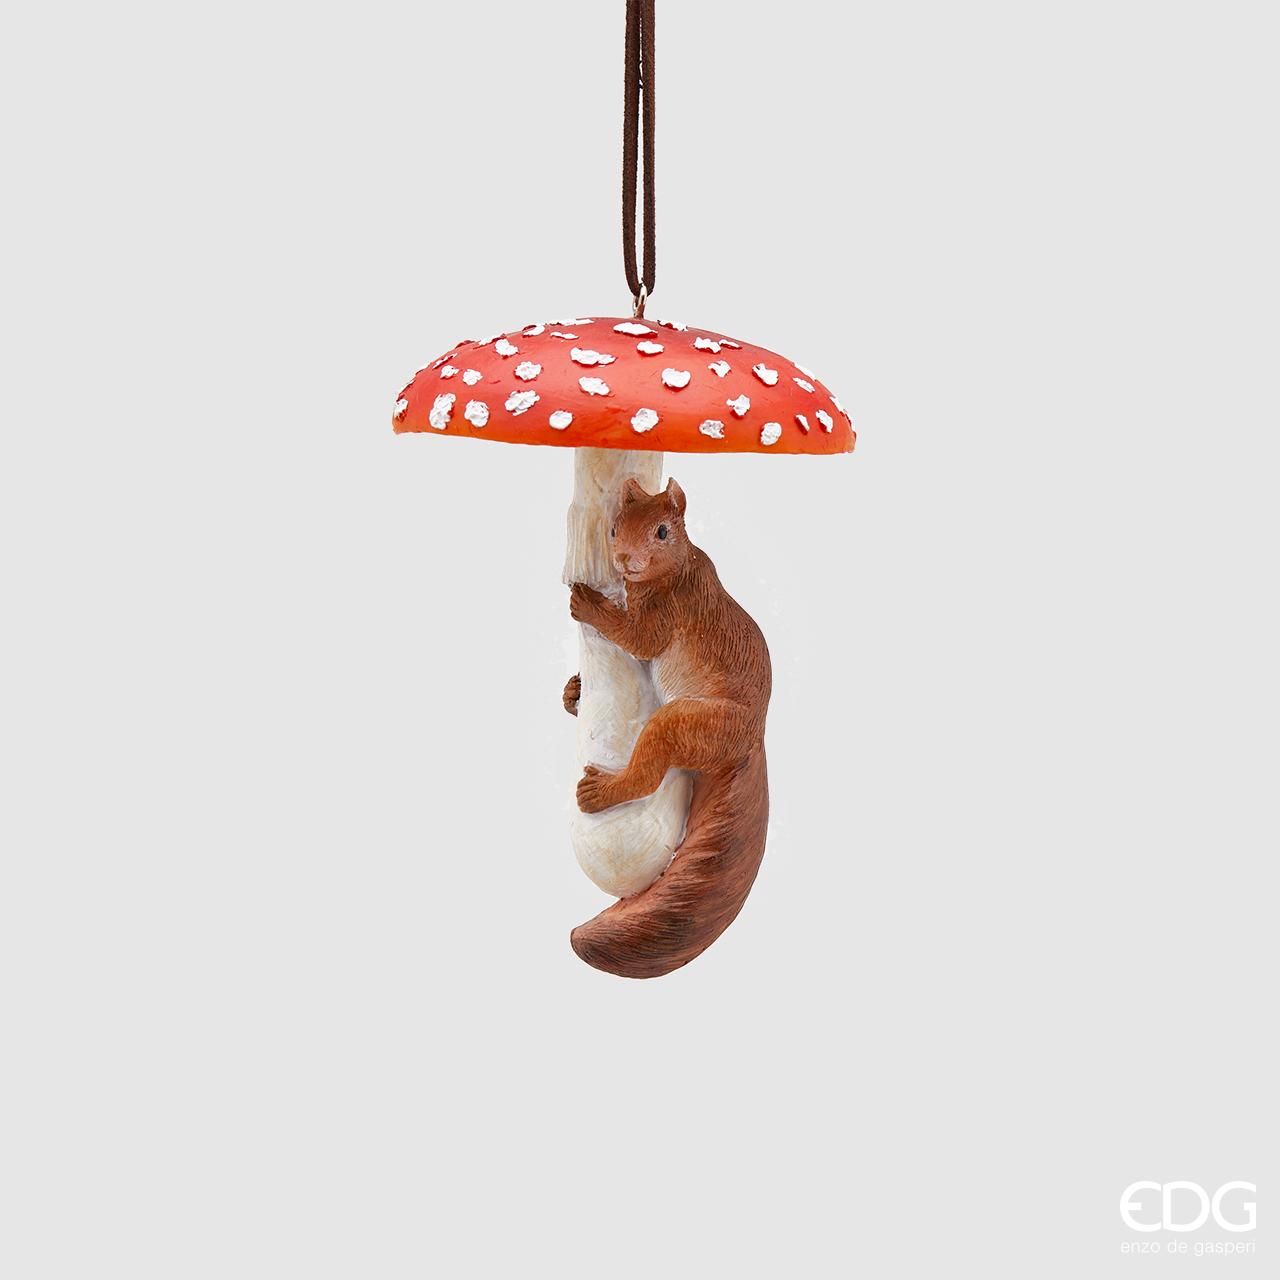 Decoro per albero di Natale, funghetto con scoiattolino in resina decorata. Dimensioni: cm 8 x 11 h. In negozio e online su tuttochic.it